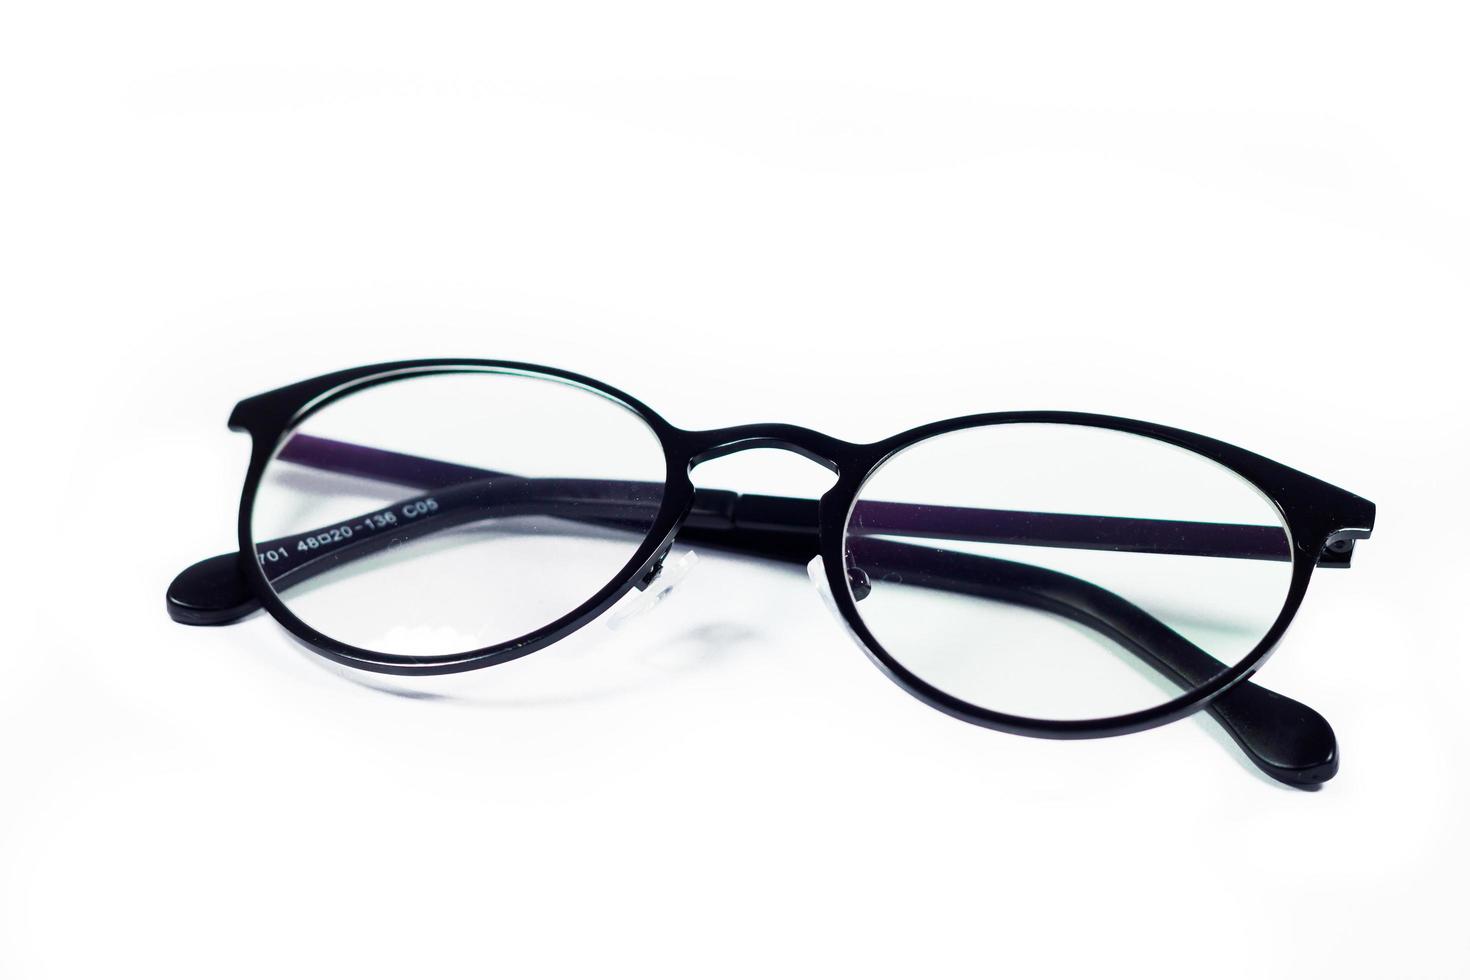 glasögon isolerad på en vit bakgrund foto